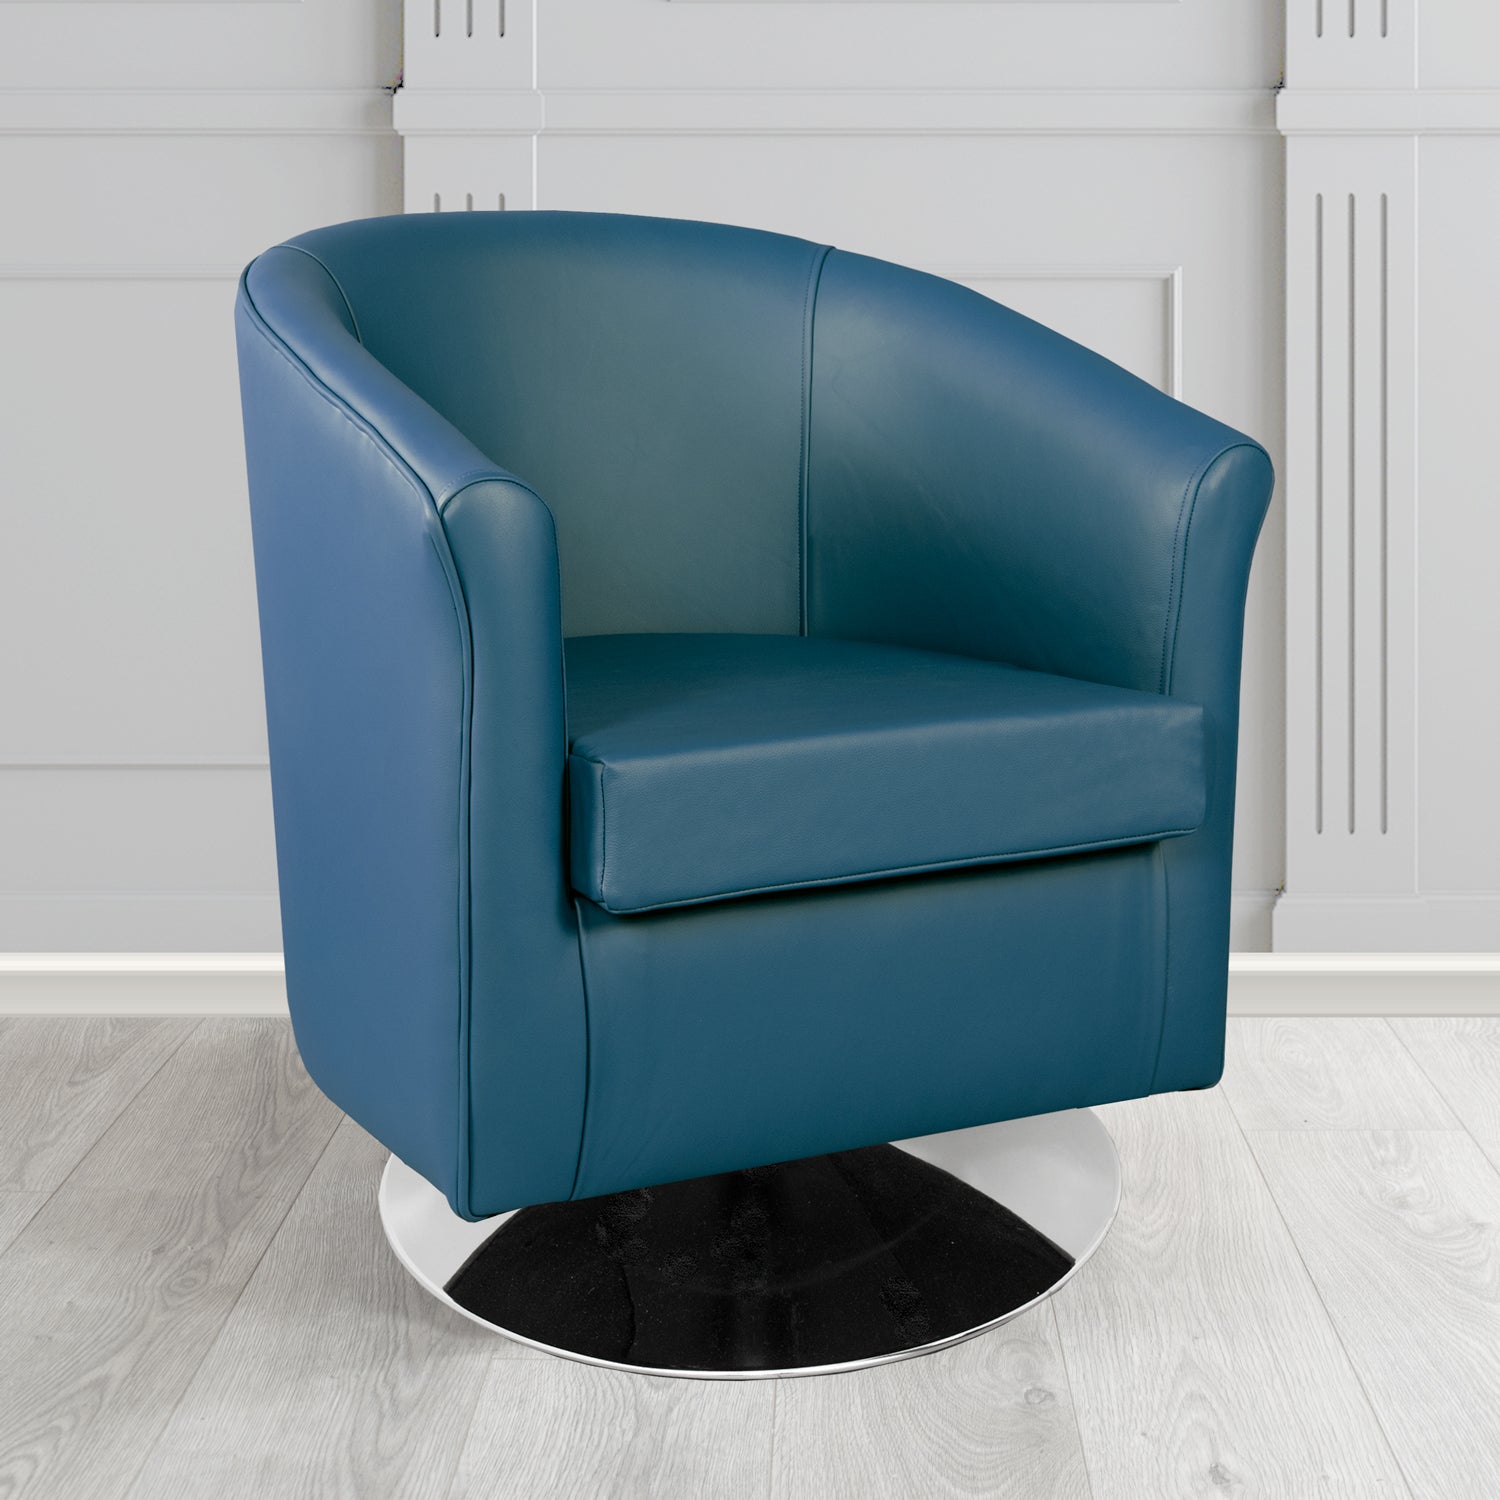 Tuscany Shelly Majolica Blue Crib 5 Genuine Leather Swivel Tub Chair - The Tub Chair Shop